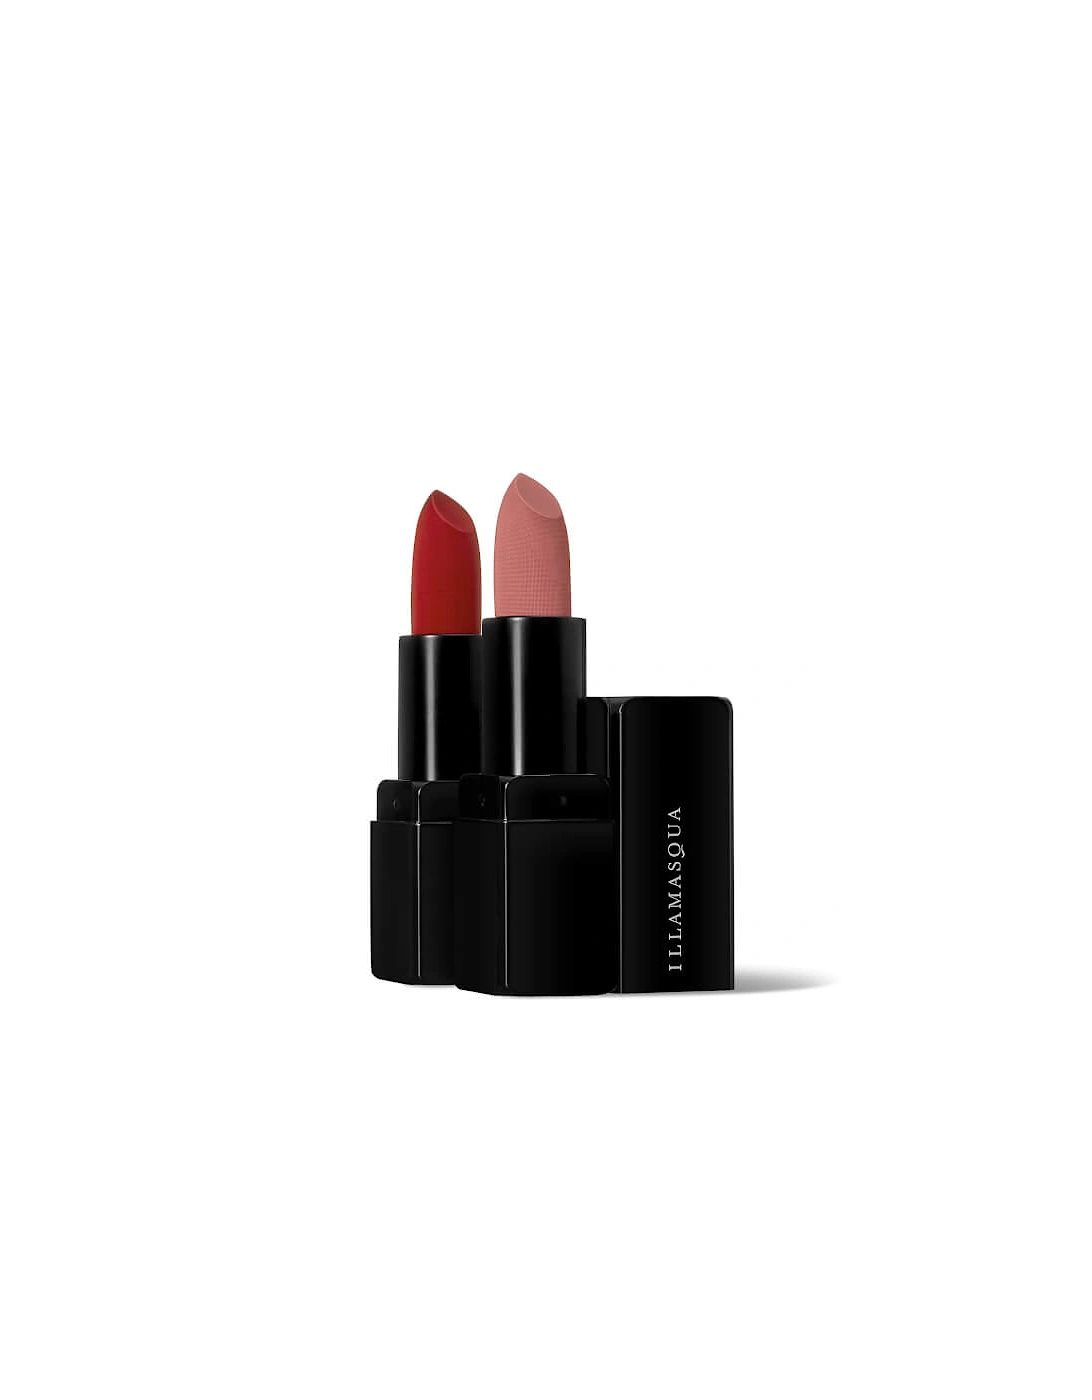 Ultramatter Lipstick - Maneater, 2 of 1